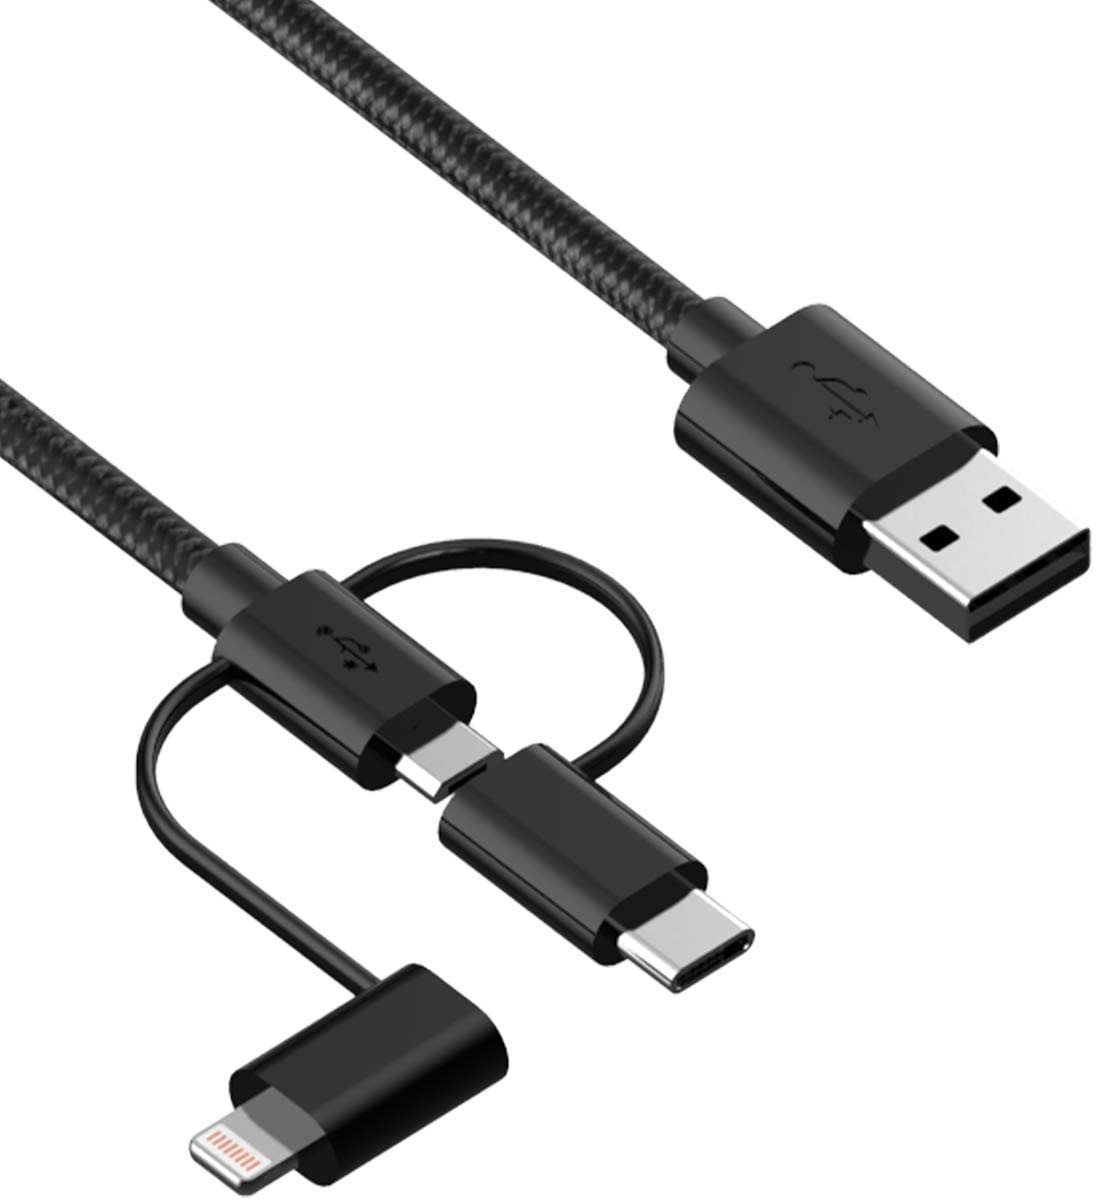 Adatkábel iWill 3in1 Nylon Data USB-C + Micro USB + Lightning Cable Black